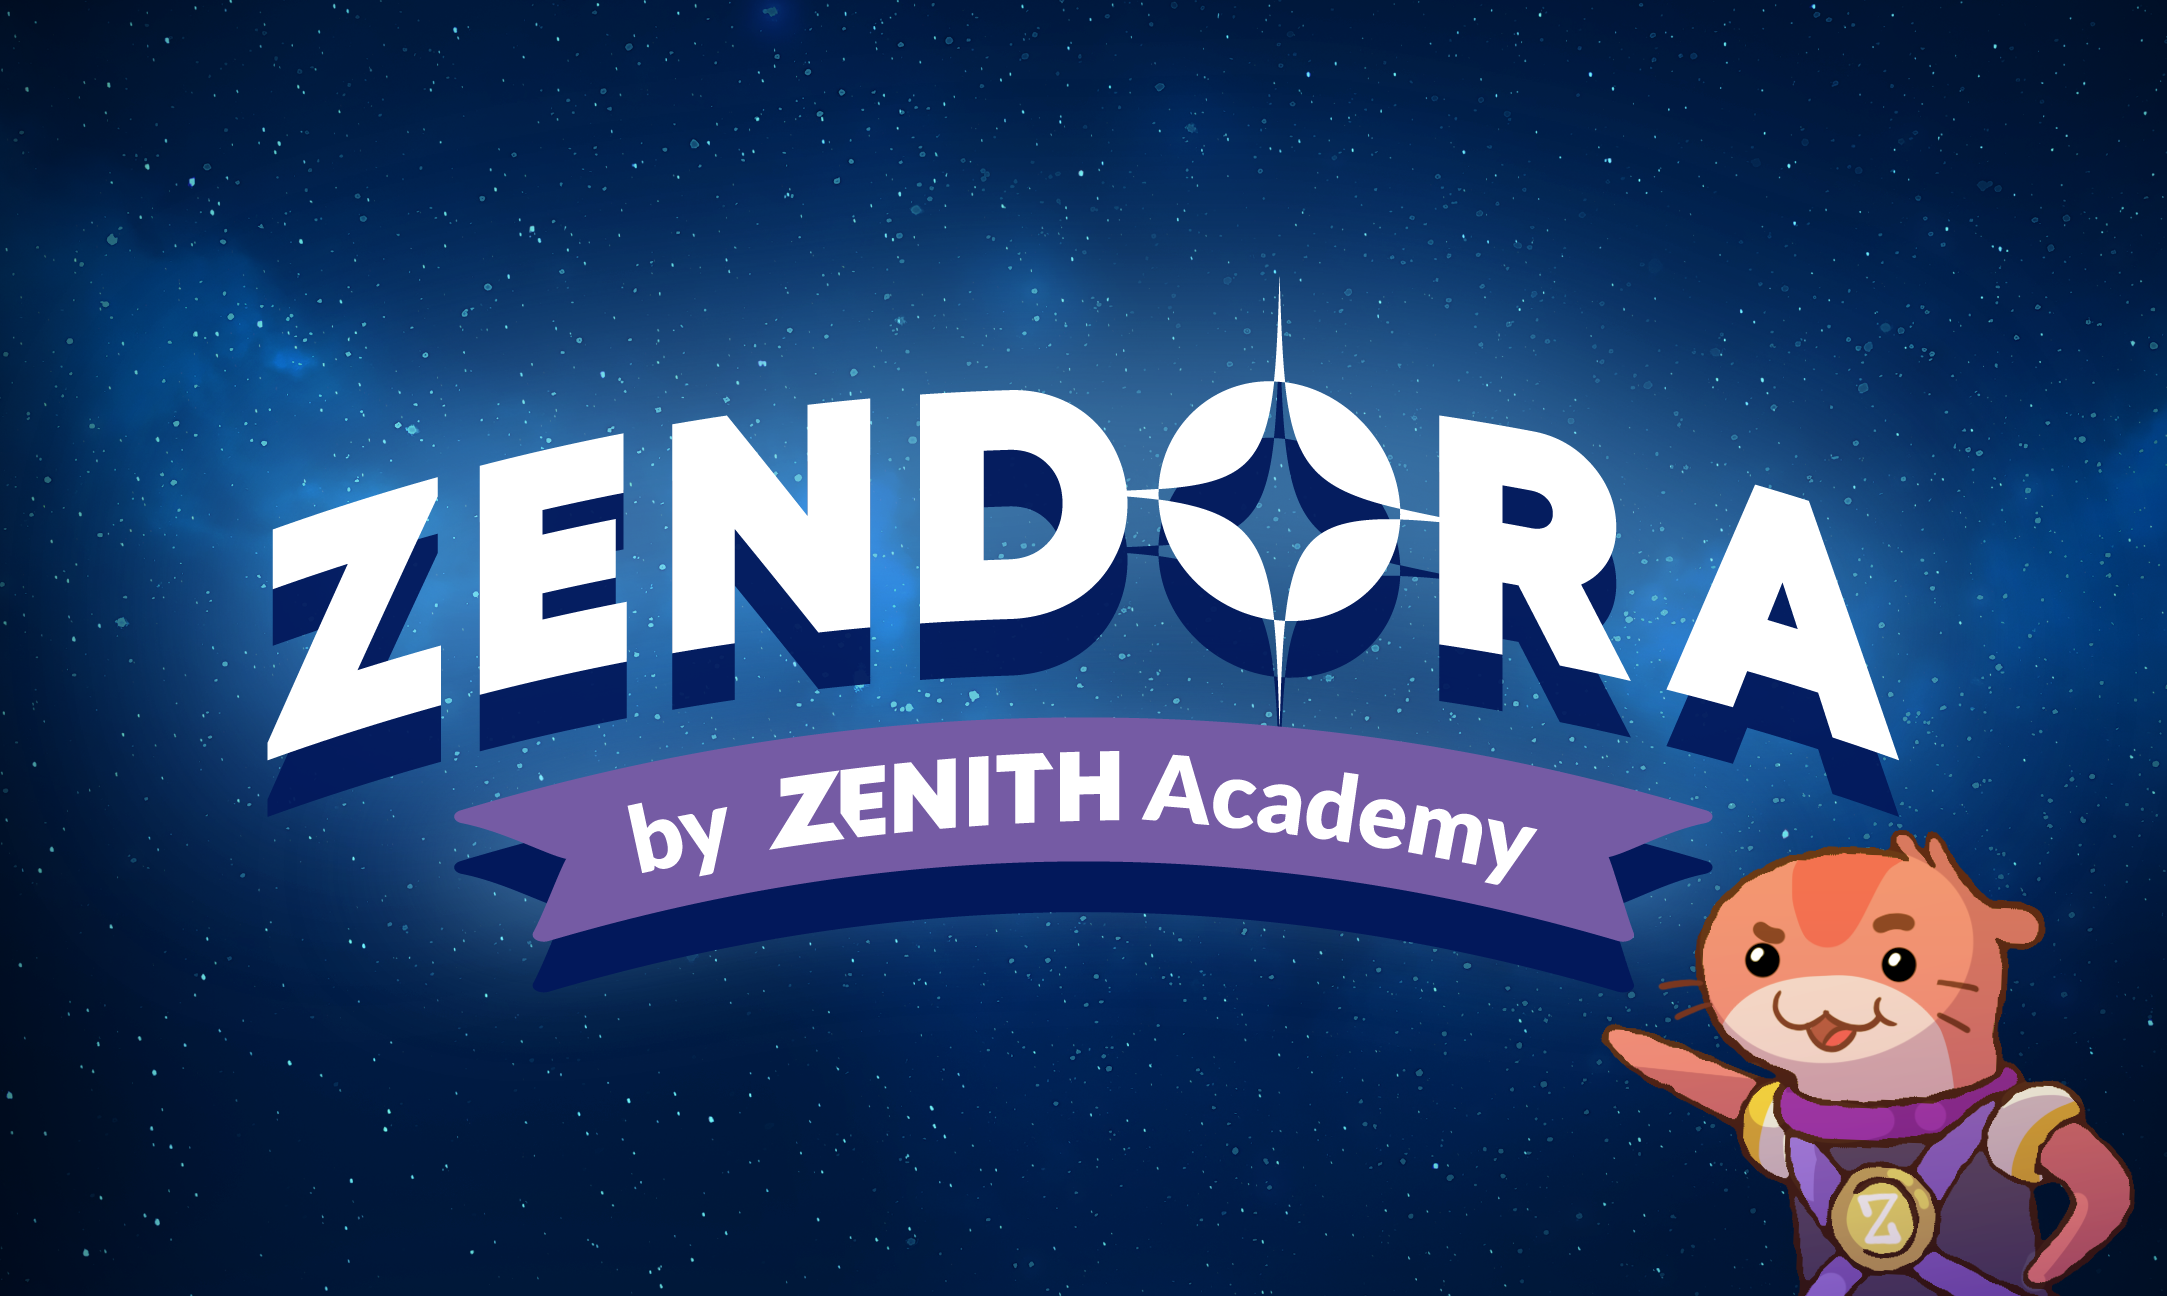 Zendora by Zenith Academy